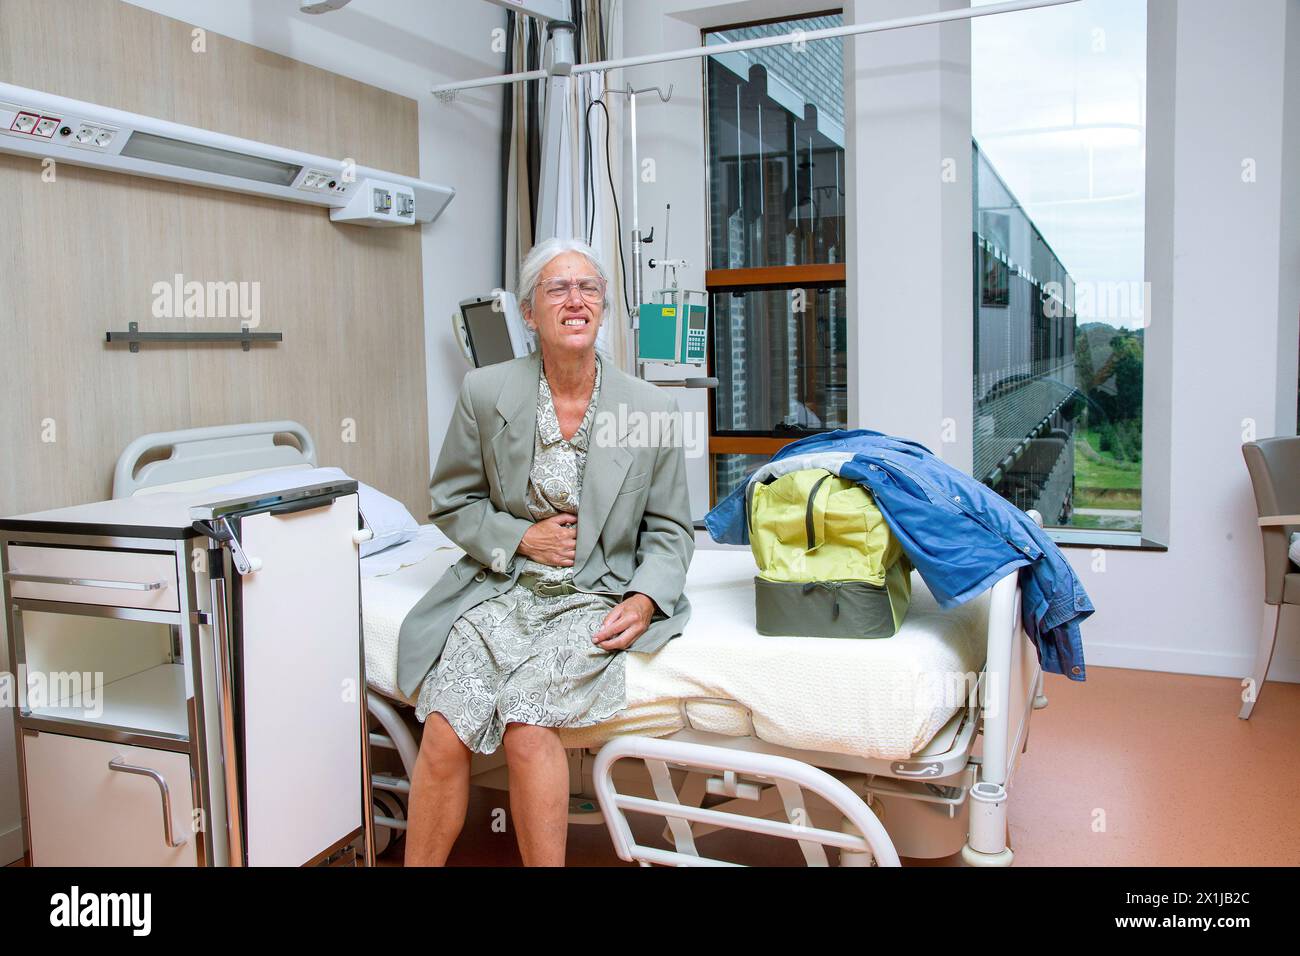 Alte Frau wird wegen starker Bauchschmerzen ins Krankenhaus eingeliefert. Die Niederlande vvbvanbree Fotografie Stockfoto